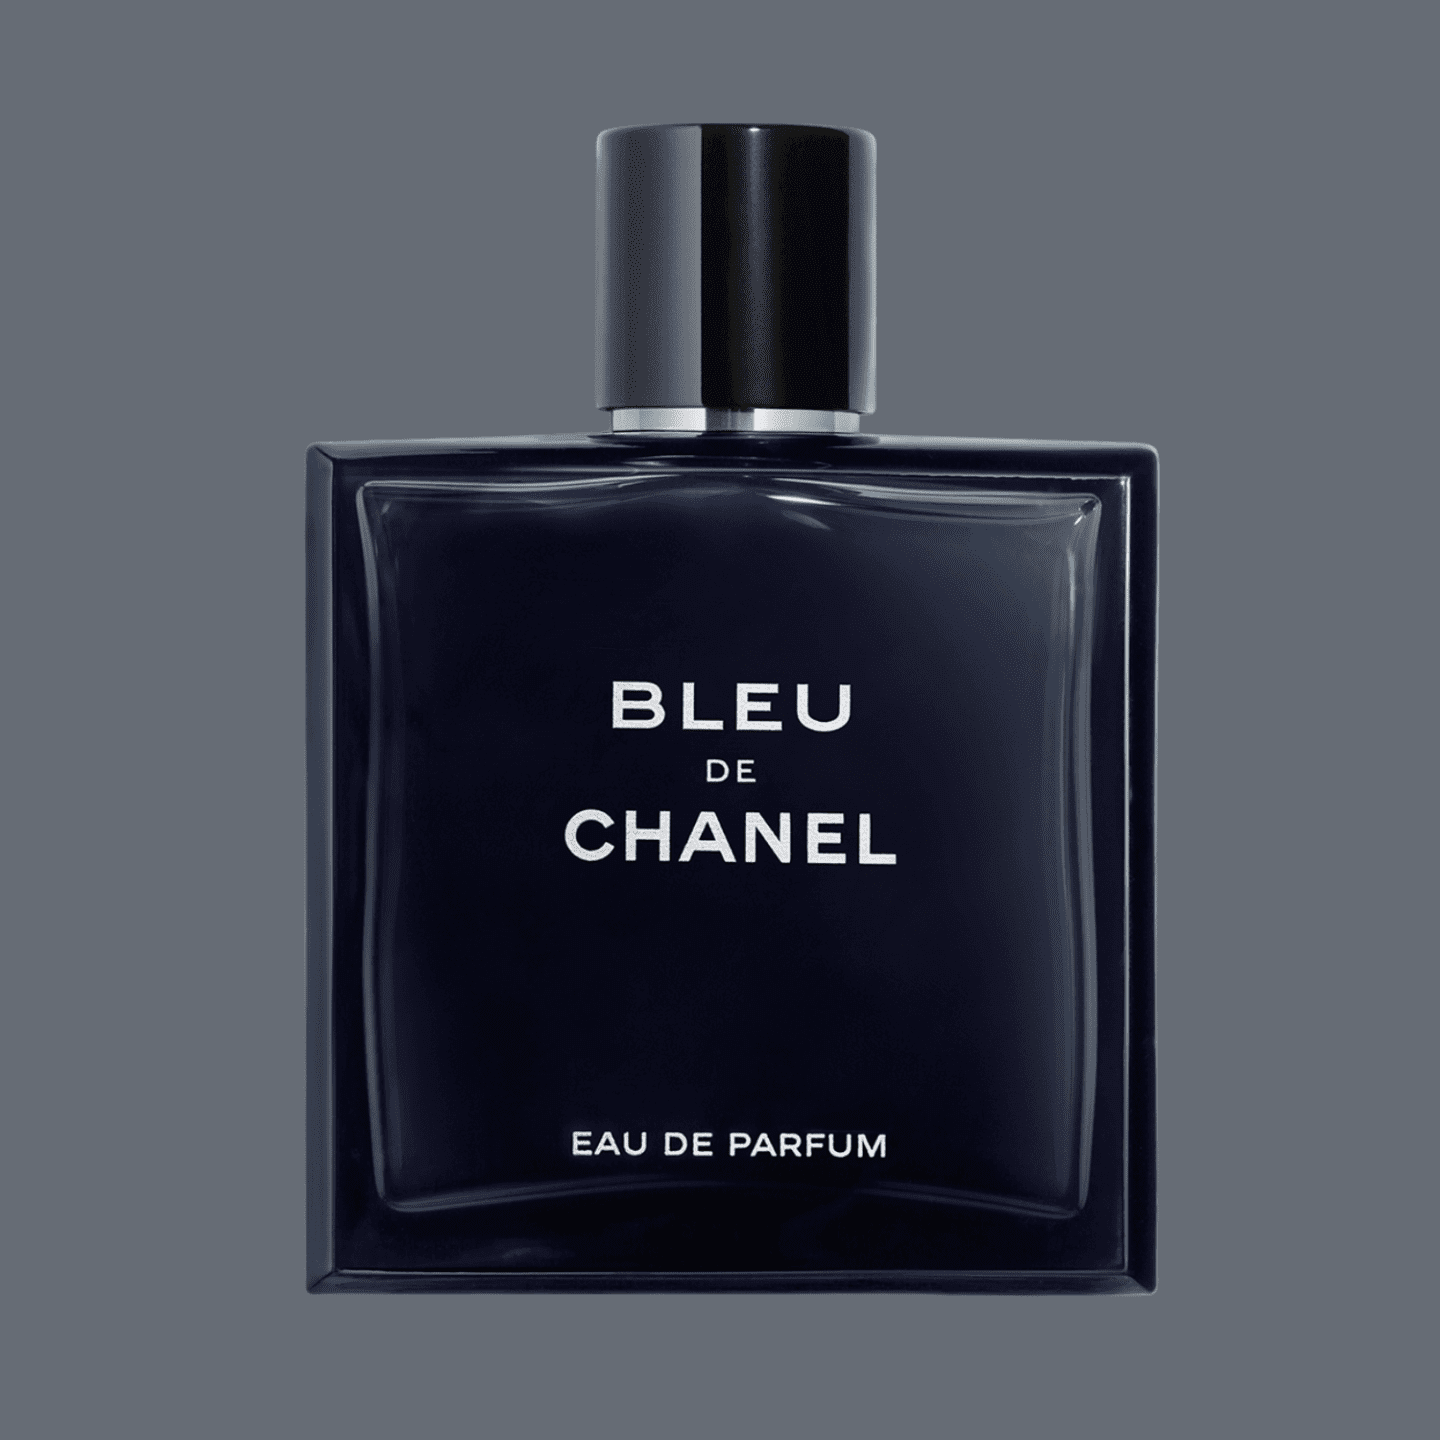 Bleu De Chanel น้ำหอม Chanel ที่ดีที่สุดสำหรับผู้ชาย